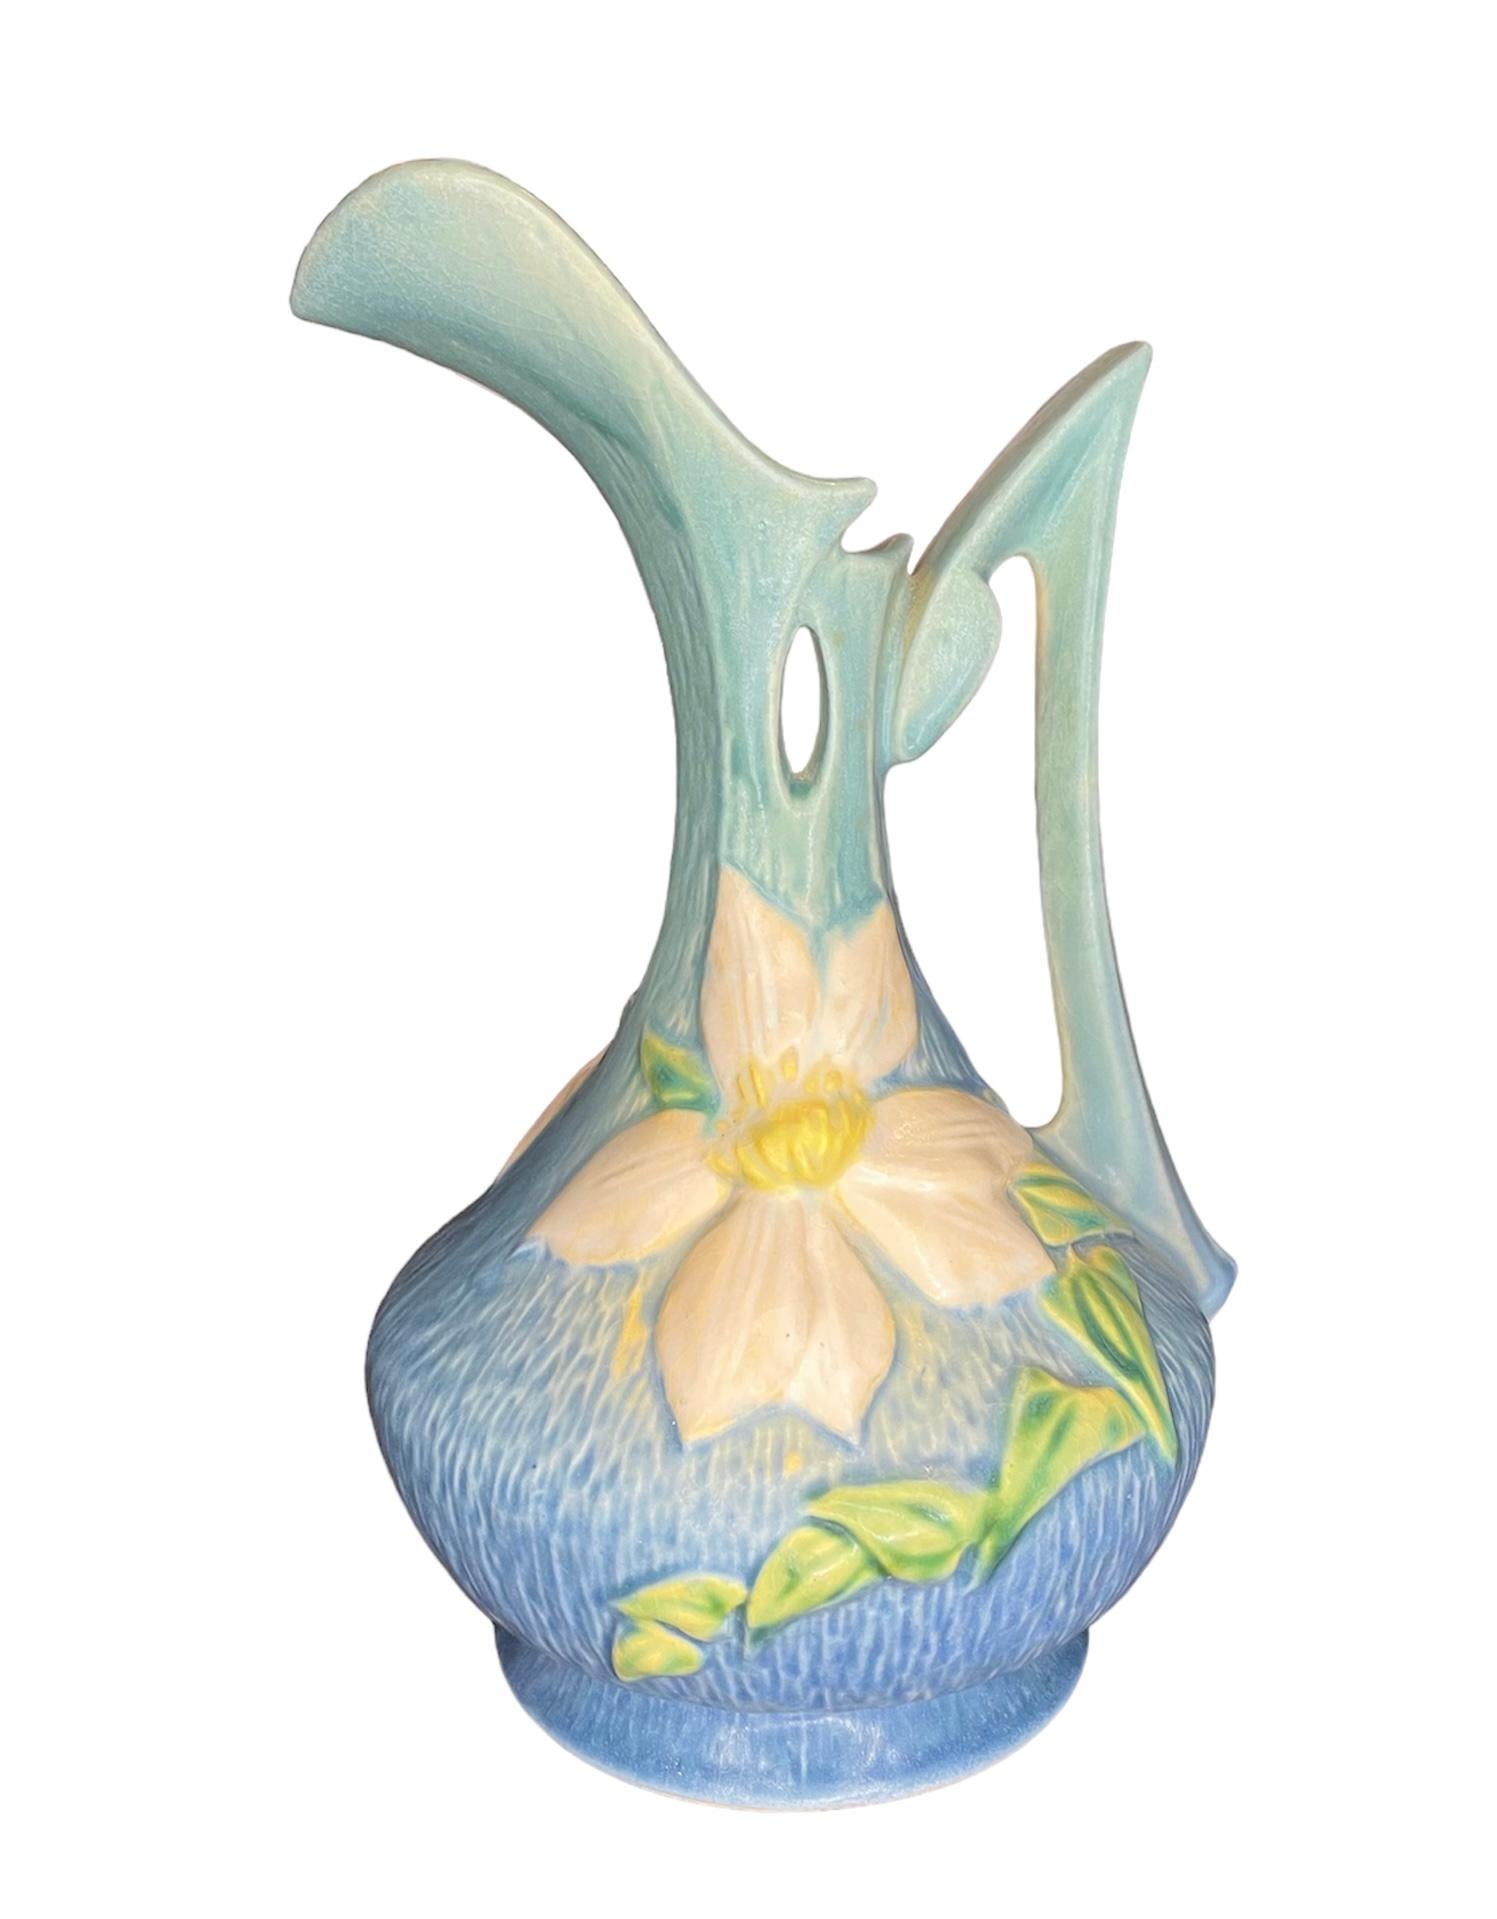 Repoussé Roseville Pottery Clematis Flower Vase